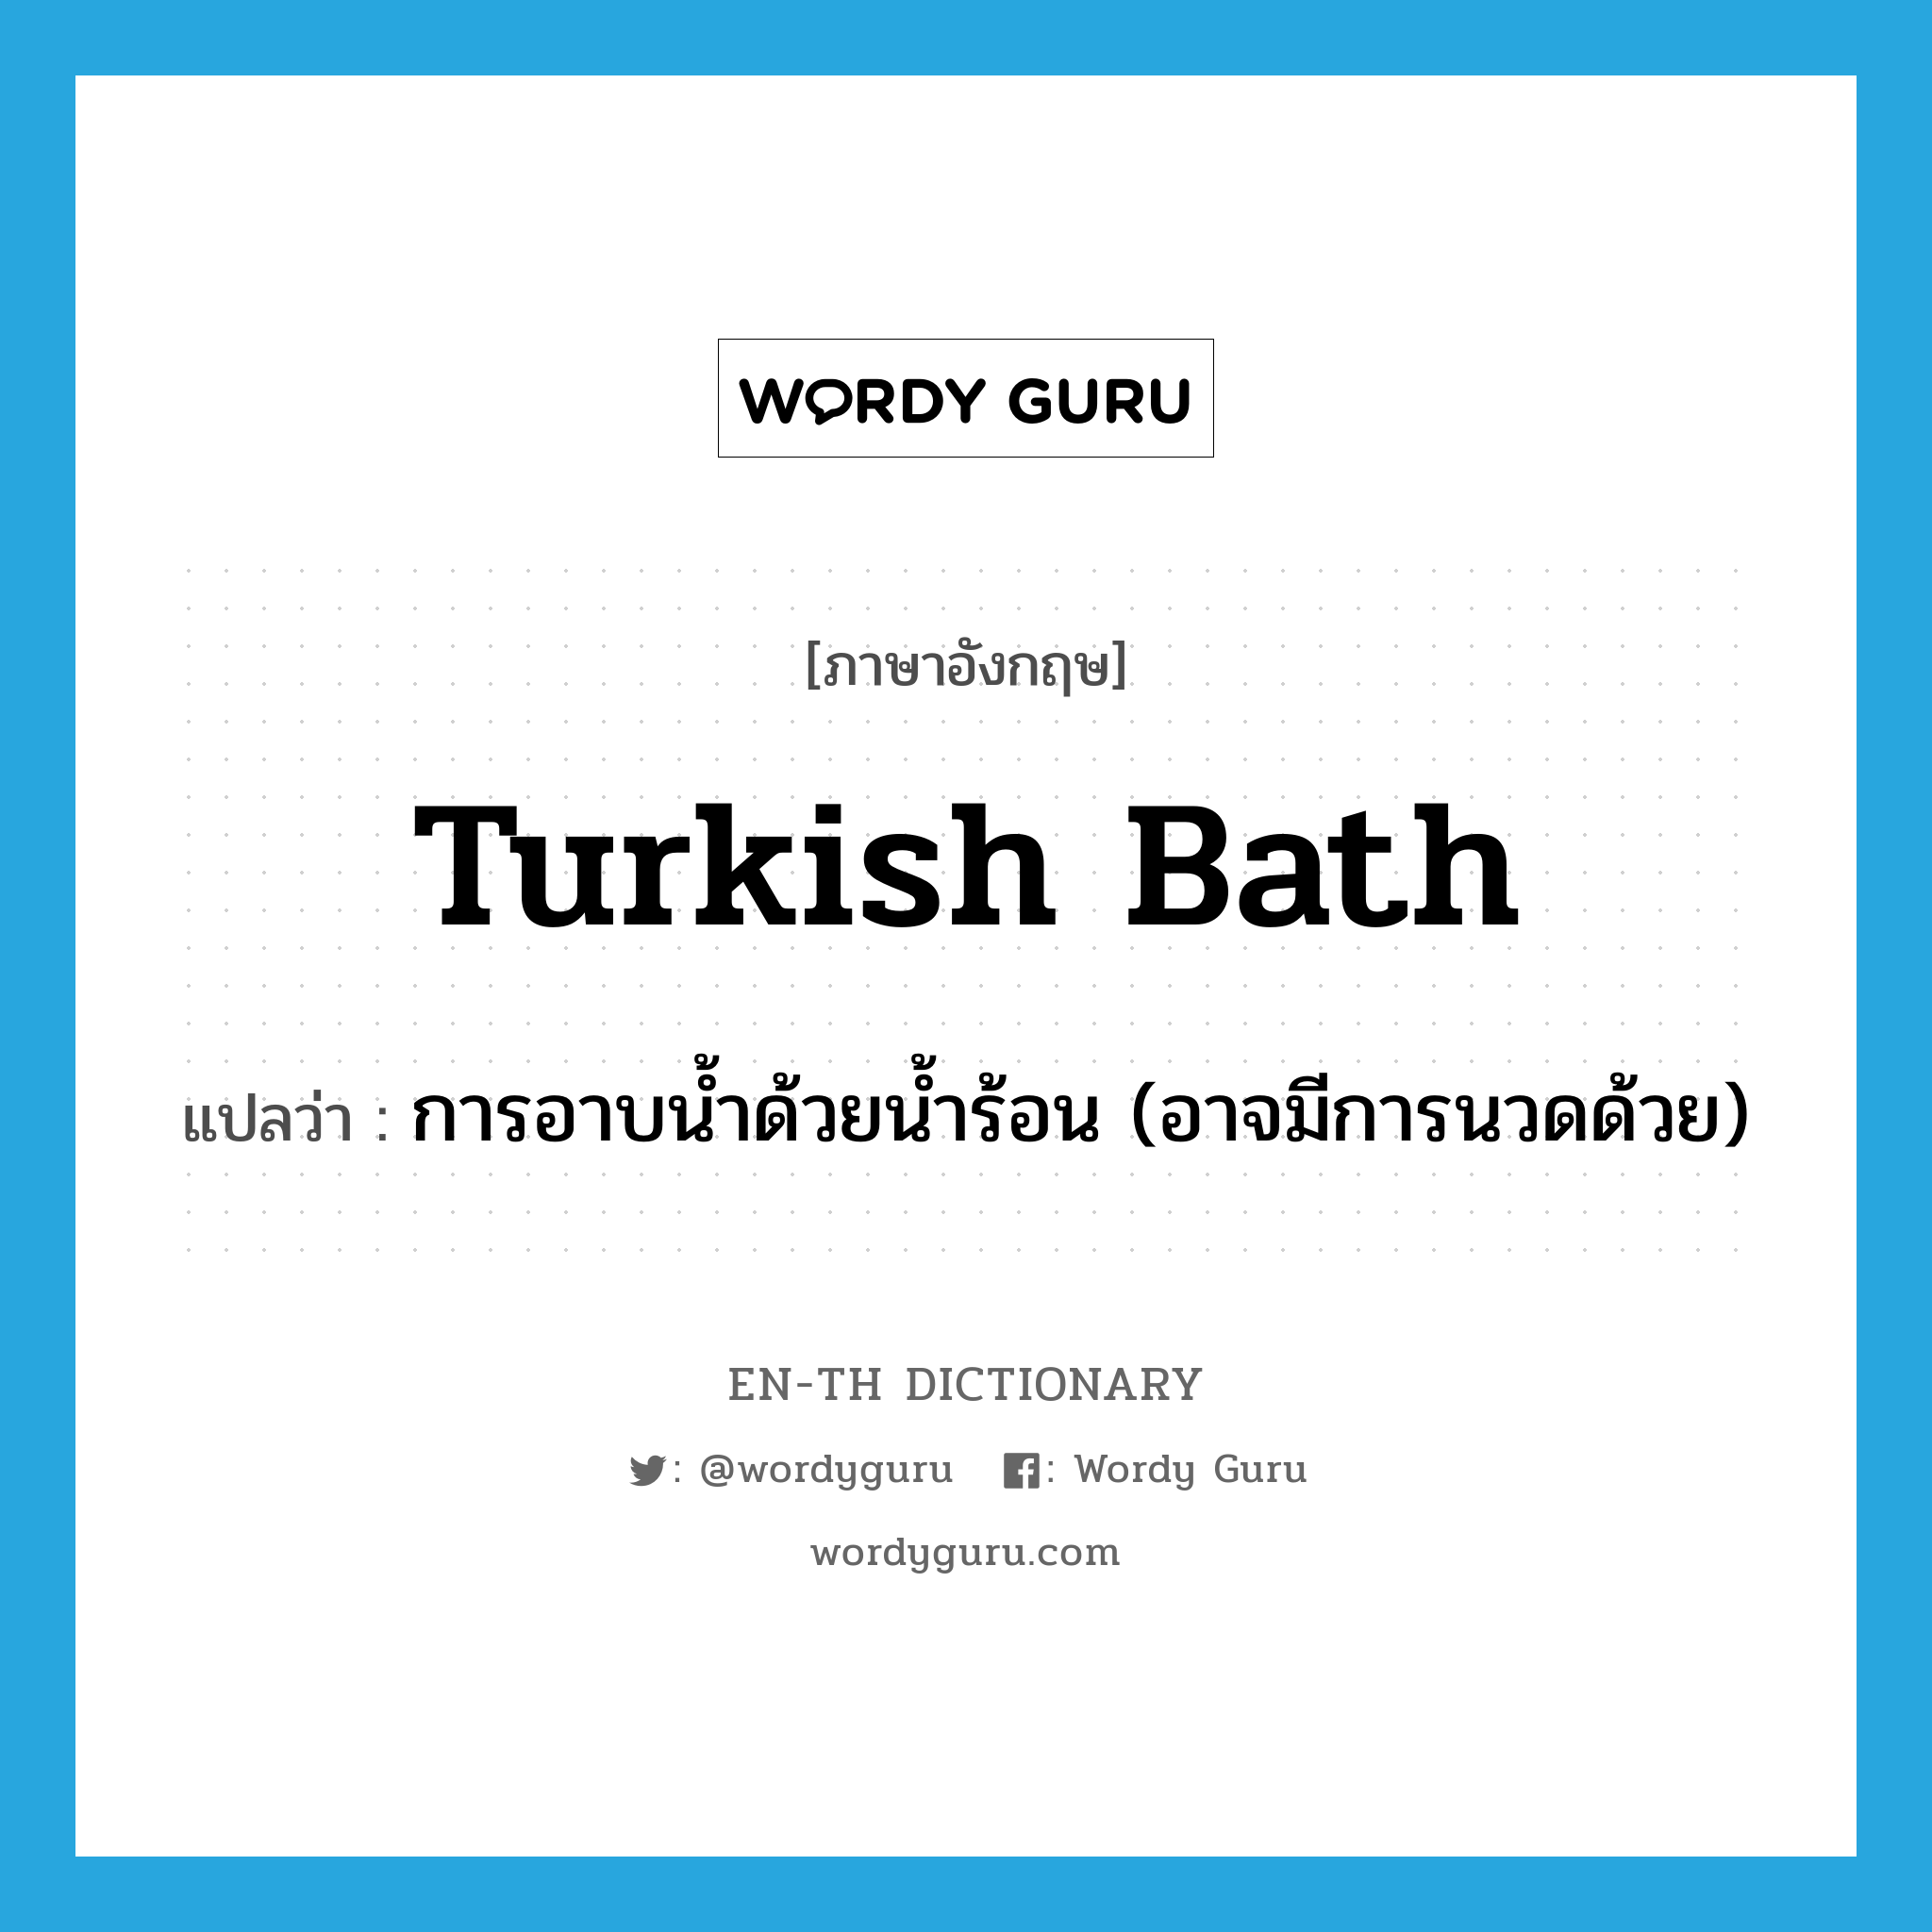 การอาบน้ำด้วยน้ำร้อน (อาจมีการนวดด้วย) ภาษาอังกฤษ?, คำศัพท์ภาษาอังกฤษ การอาบน้ำด้วยน้ำร้อน (อาจมีการนวดด้วย) แปลว่า Turkish bath ประเภท N หมวด N